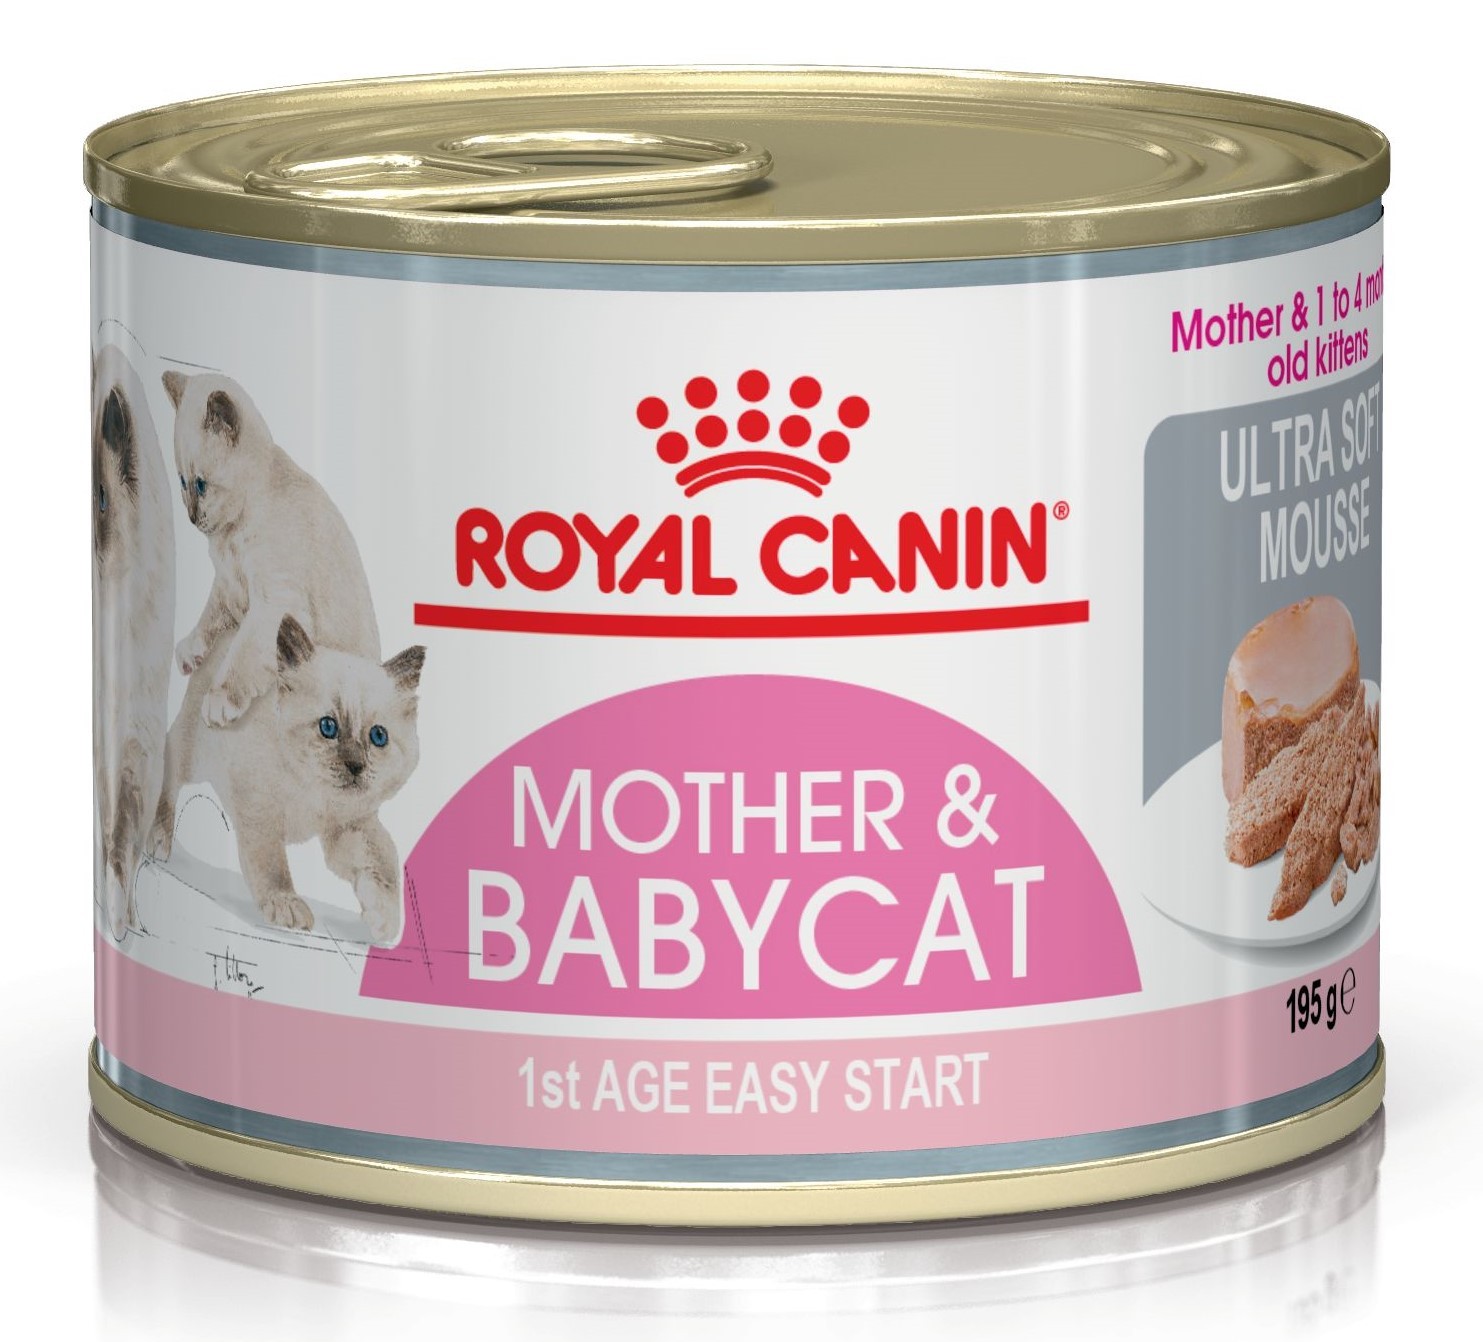 Royal Canin Babycat Instinctive для беременных кормящих кошек и котят 195гр